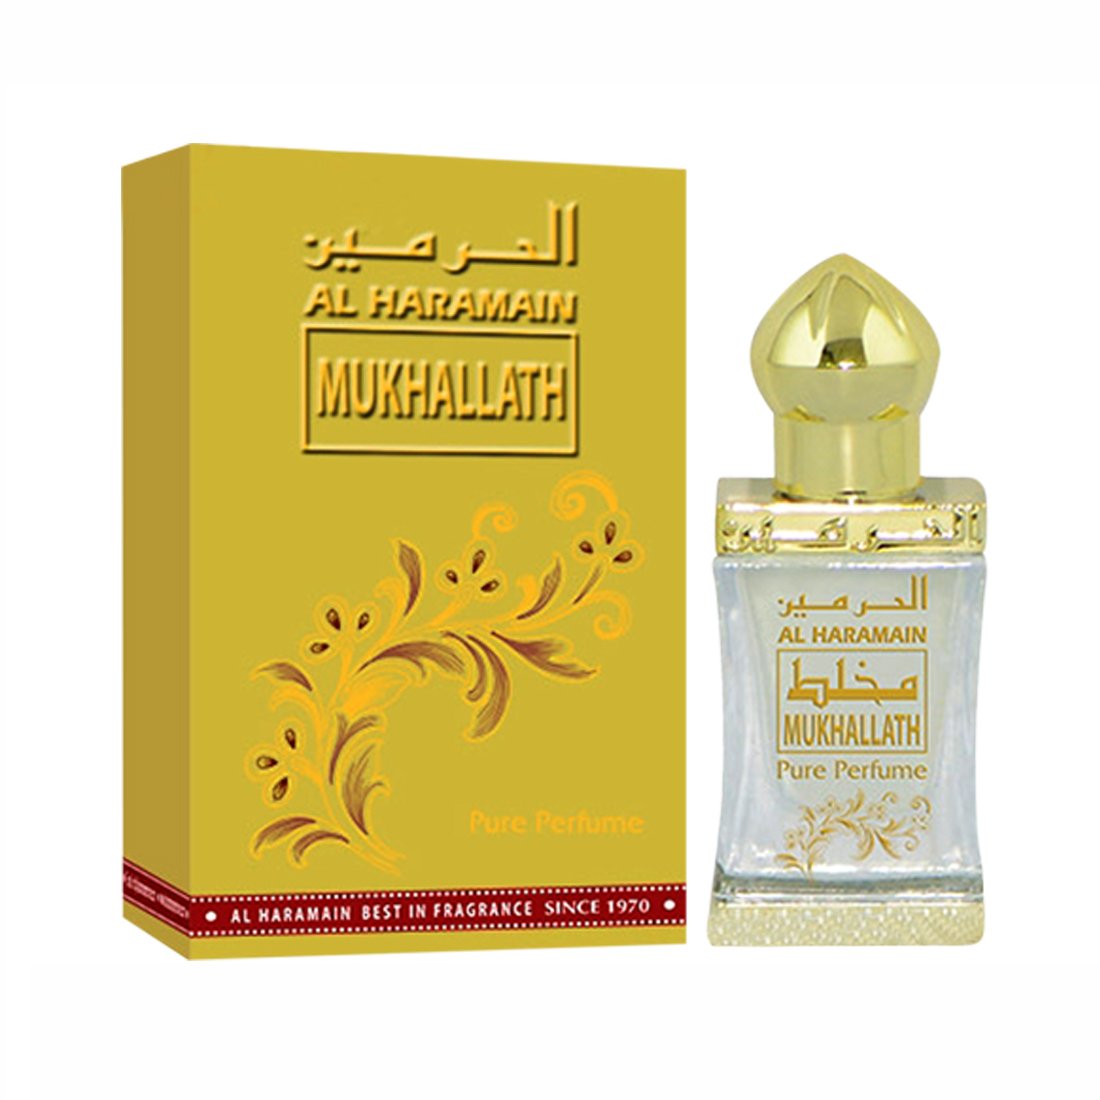 Al Haramain Mukhallath Fragrance Pure Original Perfume Oil Attar - 12 ml